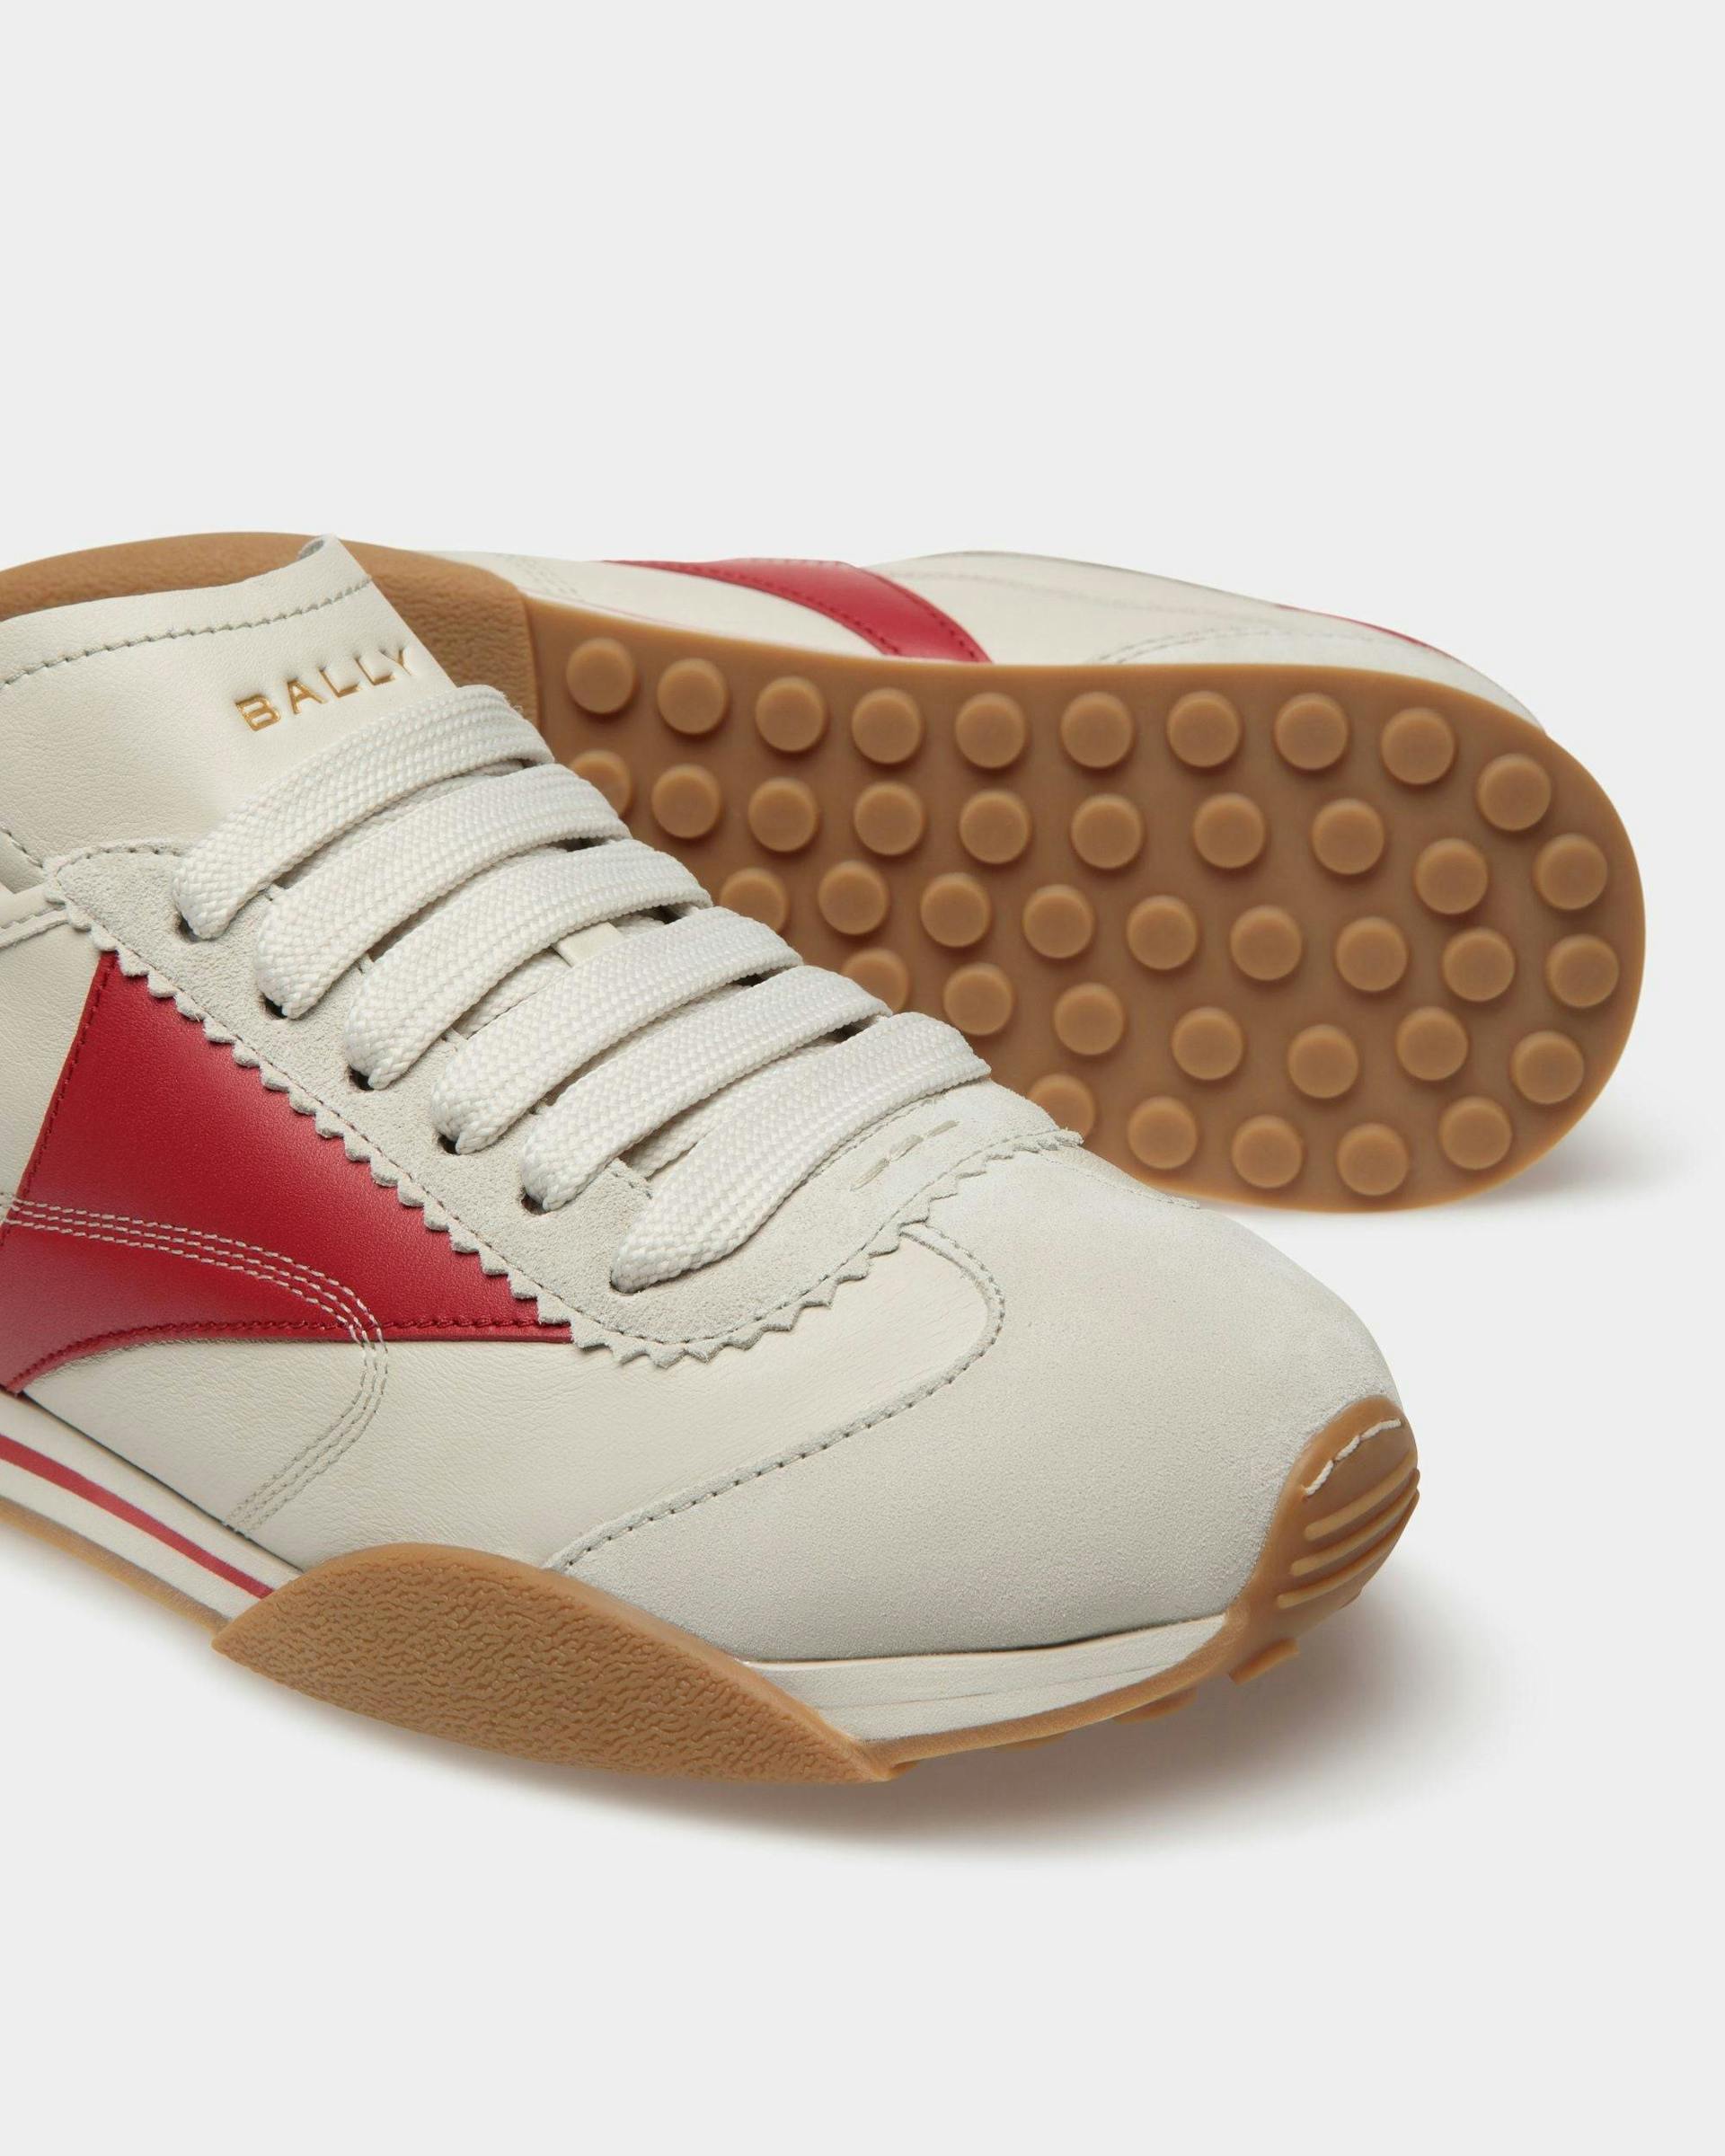 Sneaker Sussex In Pelle Bianco Cipria E Rubino Scuro - Uomo - Bally - 04